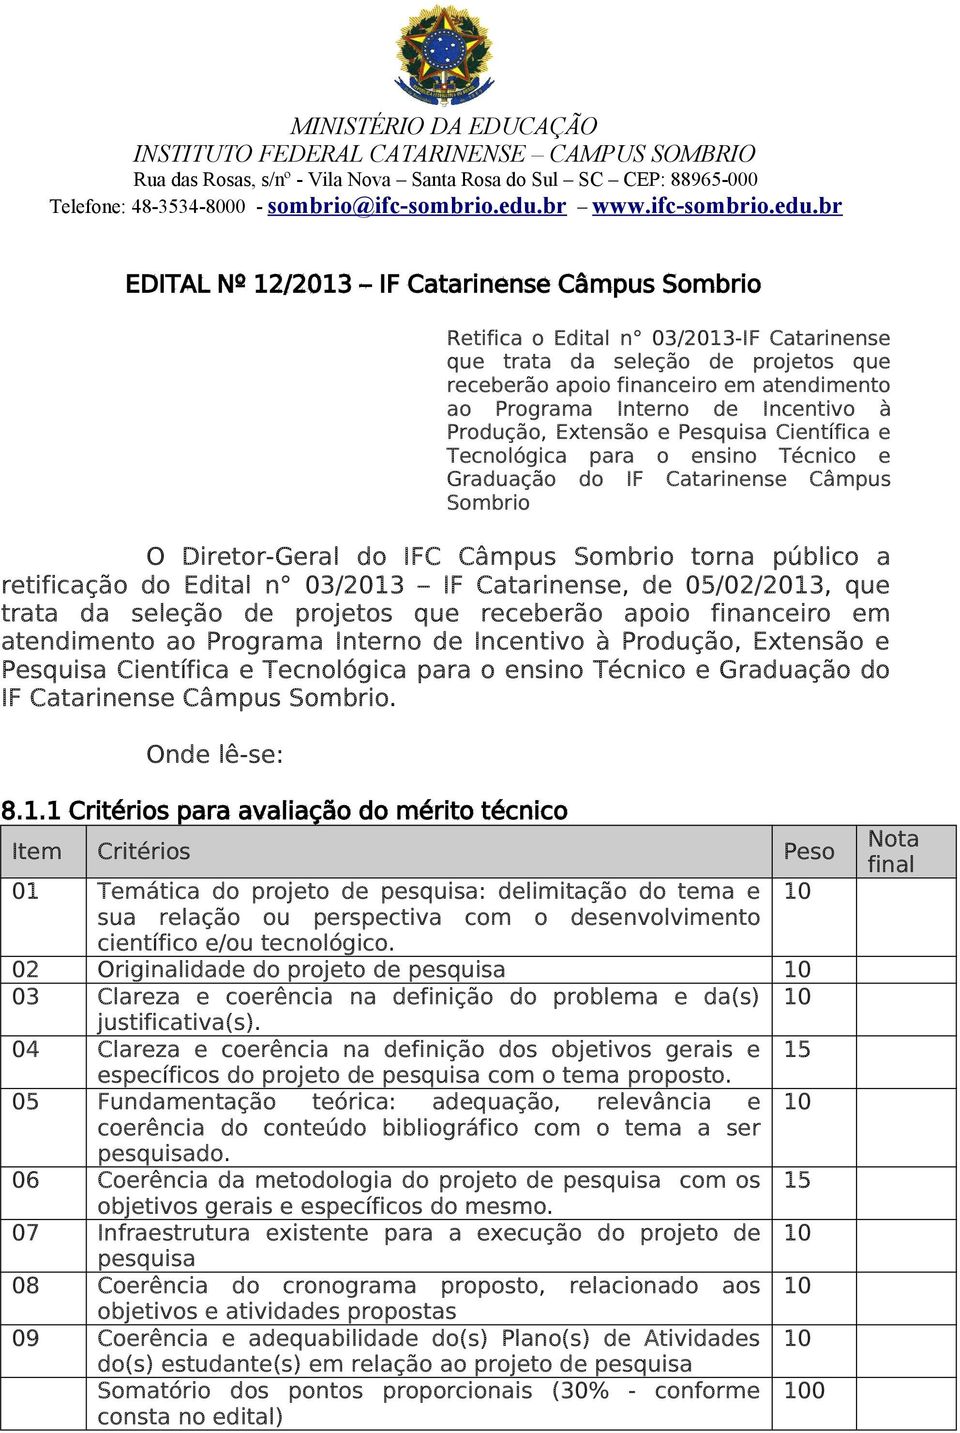 do Edital n 03/2013 IF Catarinense, de 05/02/2013, que trata da seleção de projetos que receberão apoio financeiro em atendimento ao Programa Interno de Incentivo à Produção, Extensão e Pesquisa